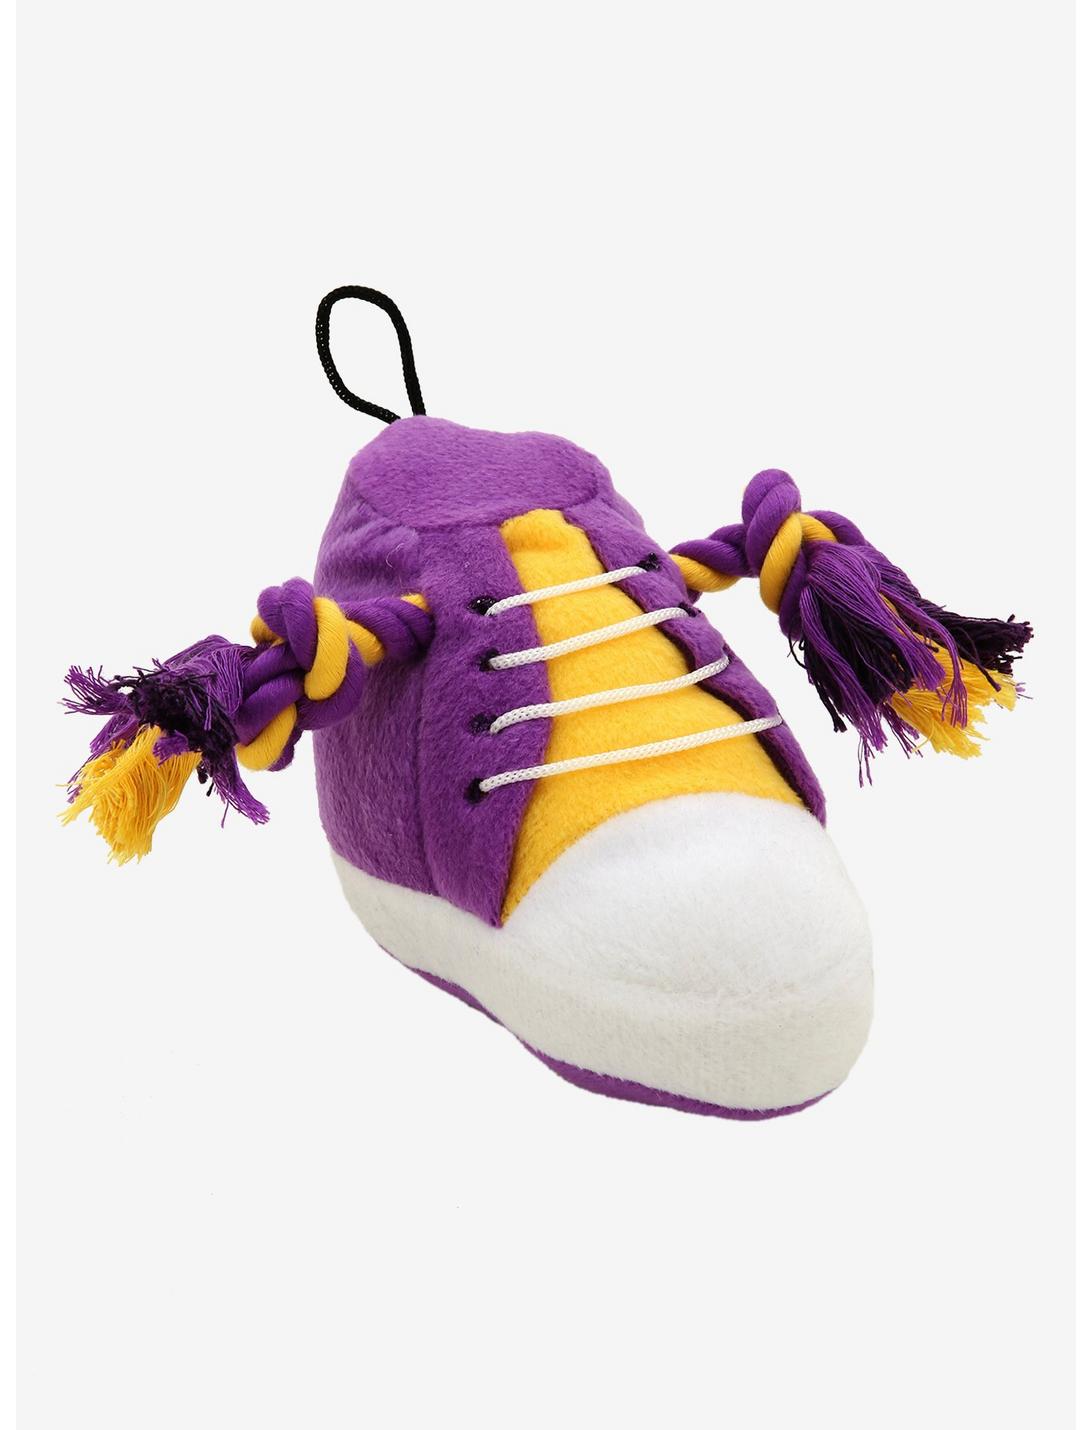 NBA Los Angeles Lakers Sneaker Squeaky Pet Toy, , hi-res